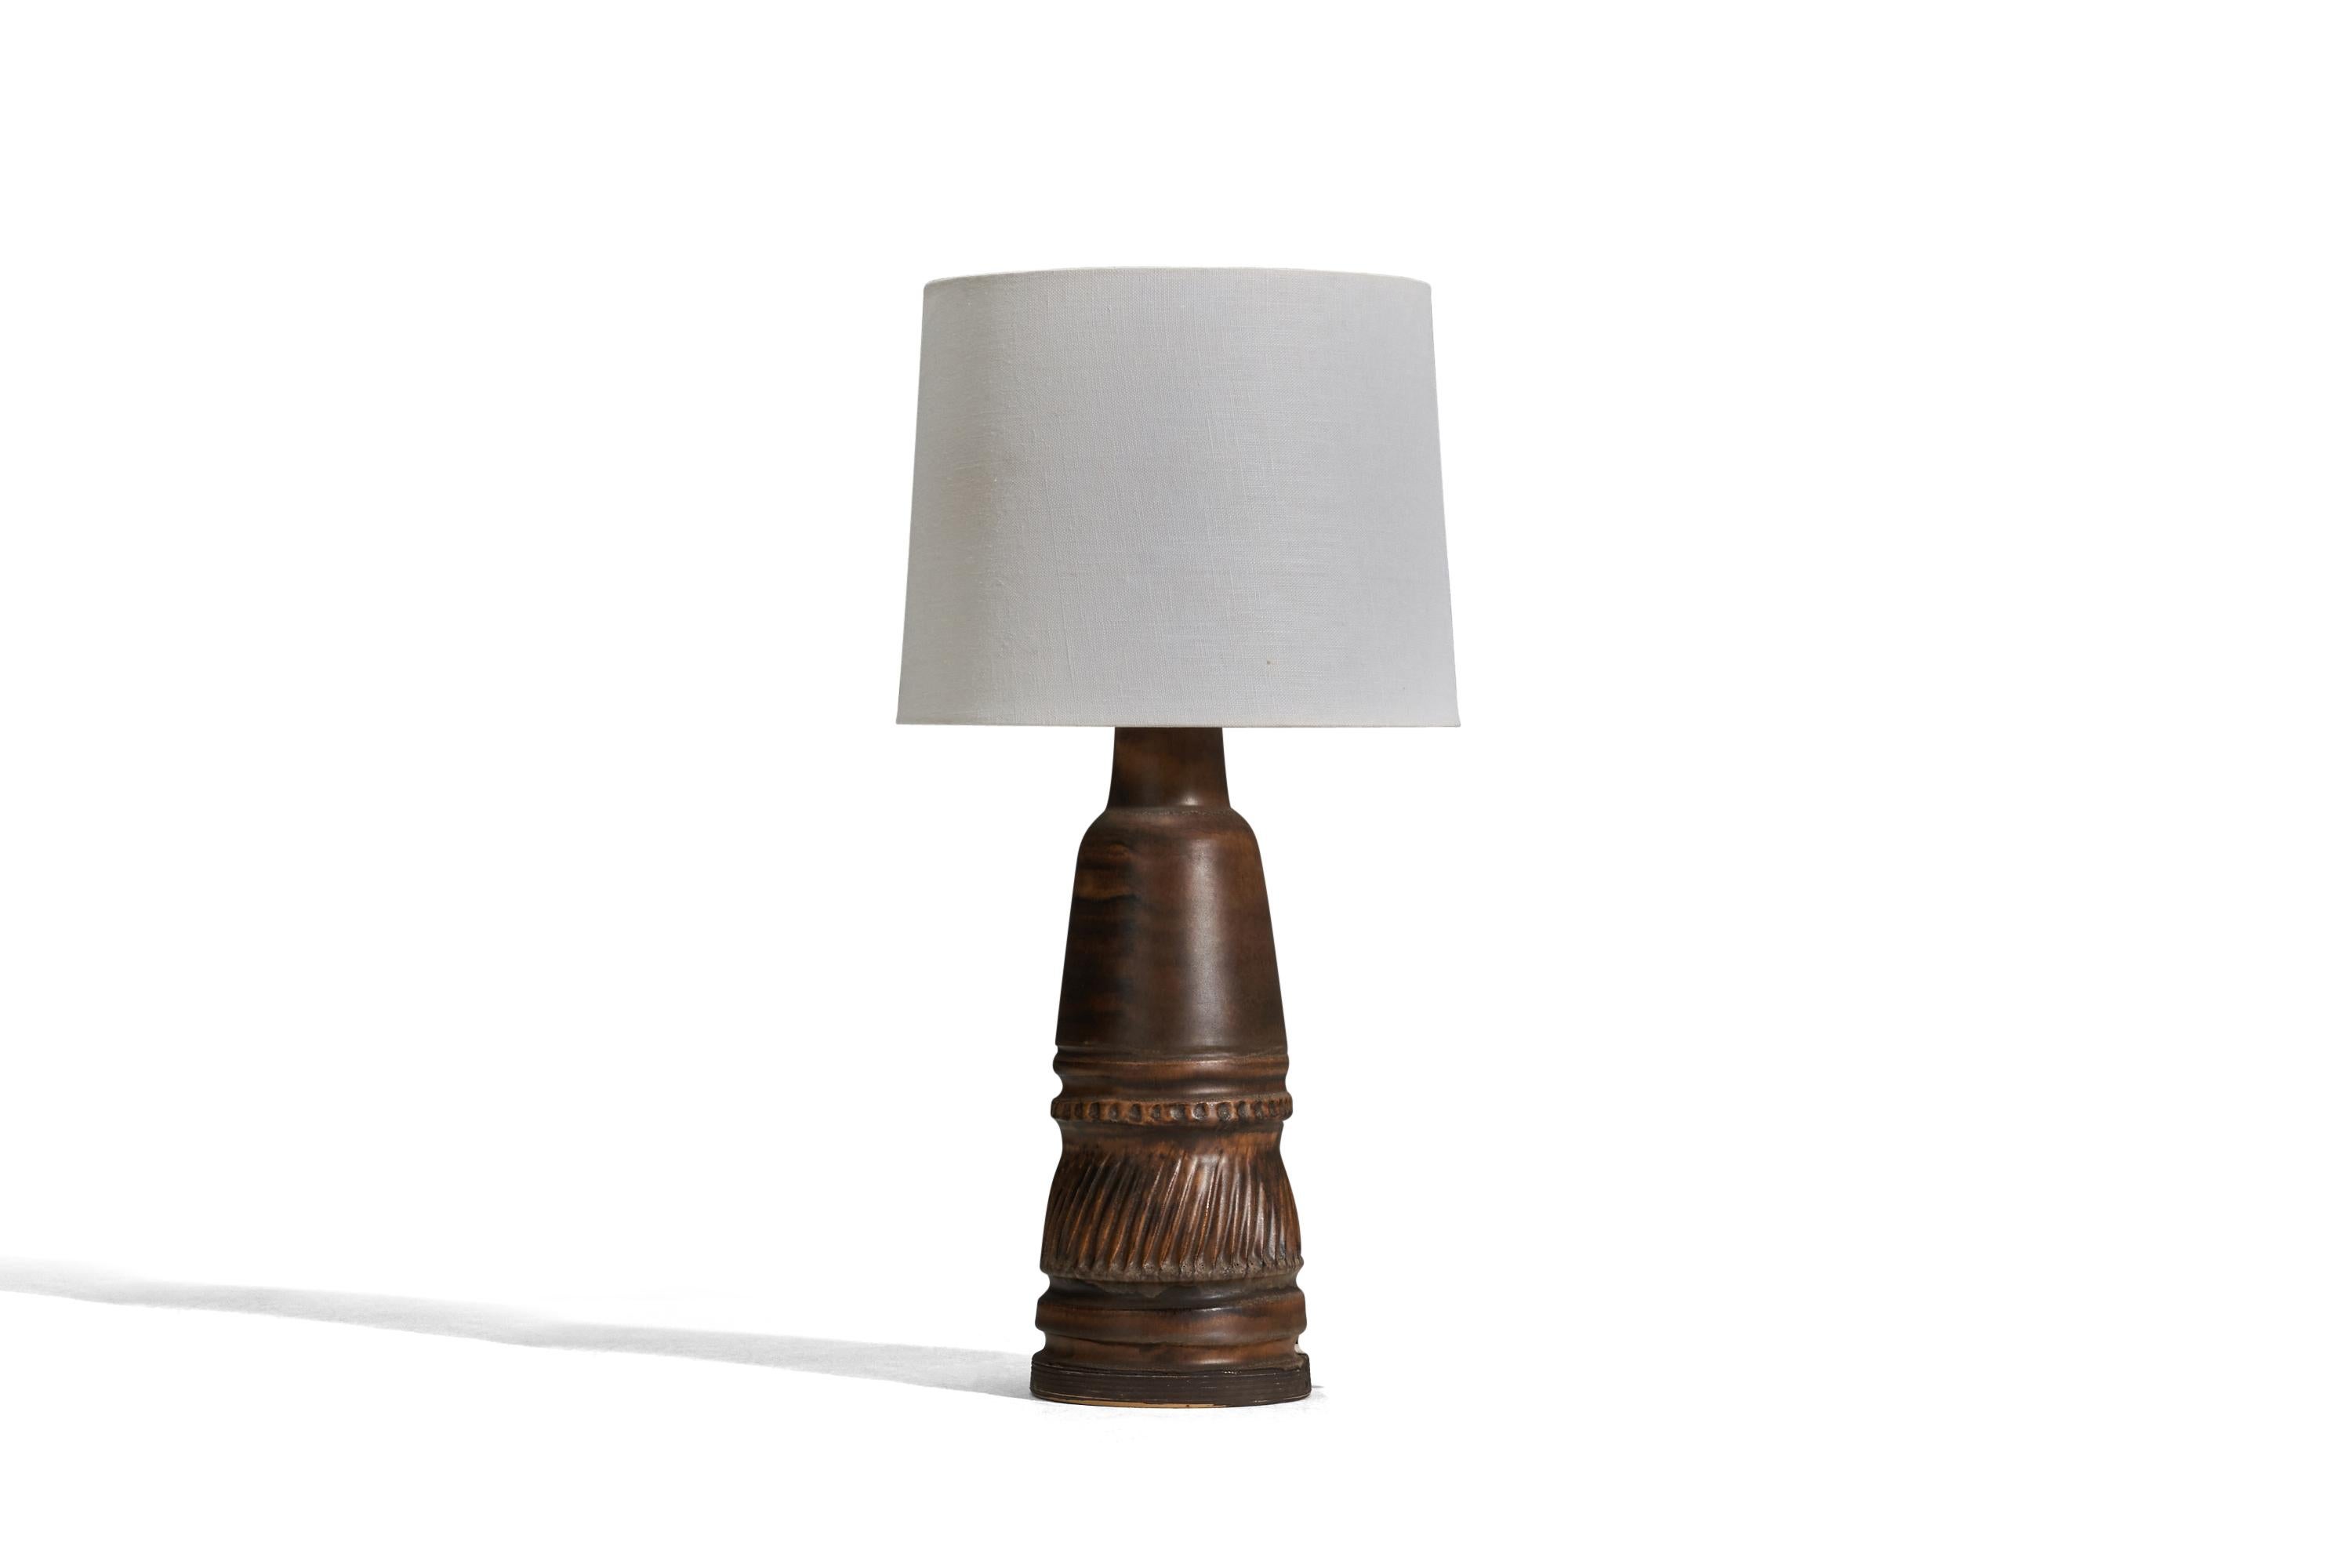 Lampe de table en grès émaillé brun conçue et produite par Irma Yourstone, Suède, années 1960.

Vendu sans abat-jour
Dimensions de la lampe (pouces) : 14.56 x 5.07 x 5.07 (Hauteur x Largeur x Profondeur)
Dimensions de l'abat-jour (pouces) : 9 x 10 x